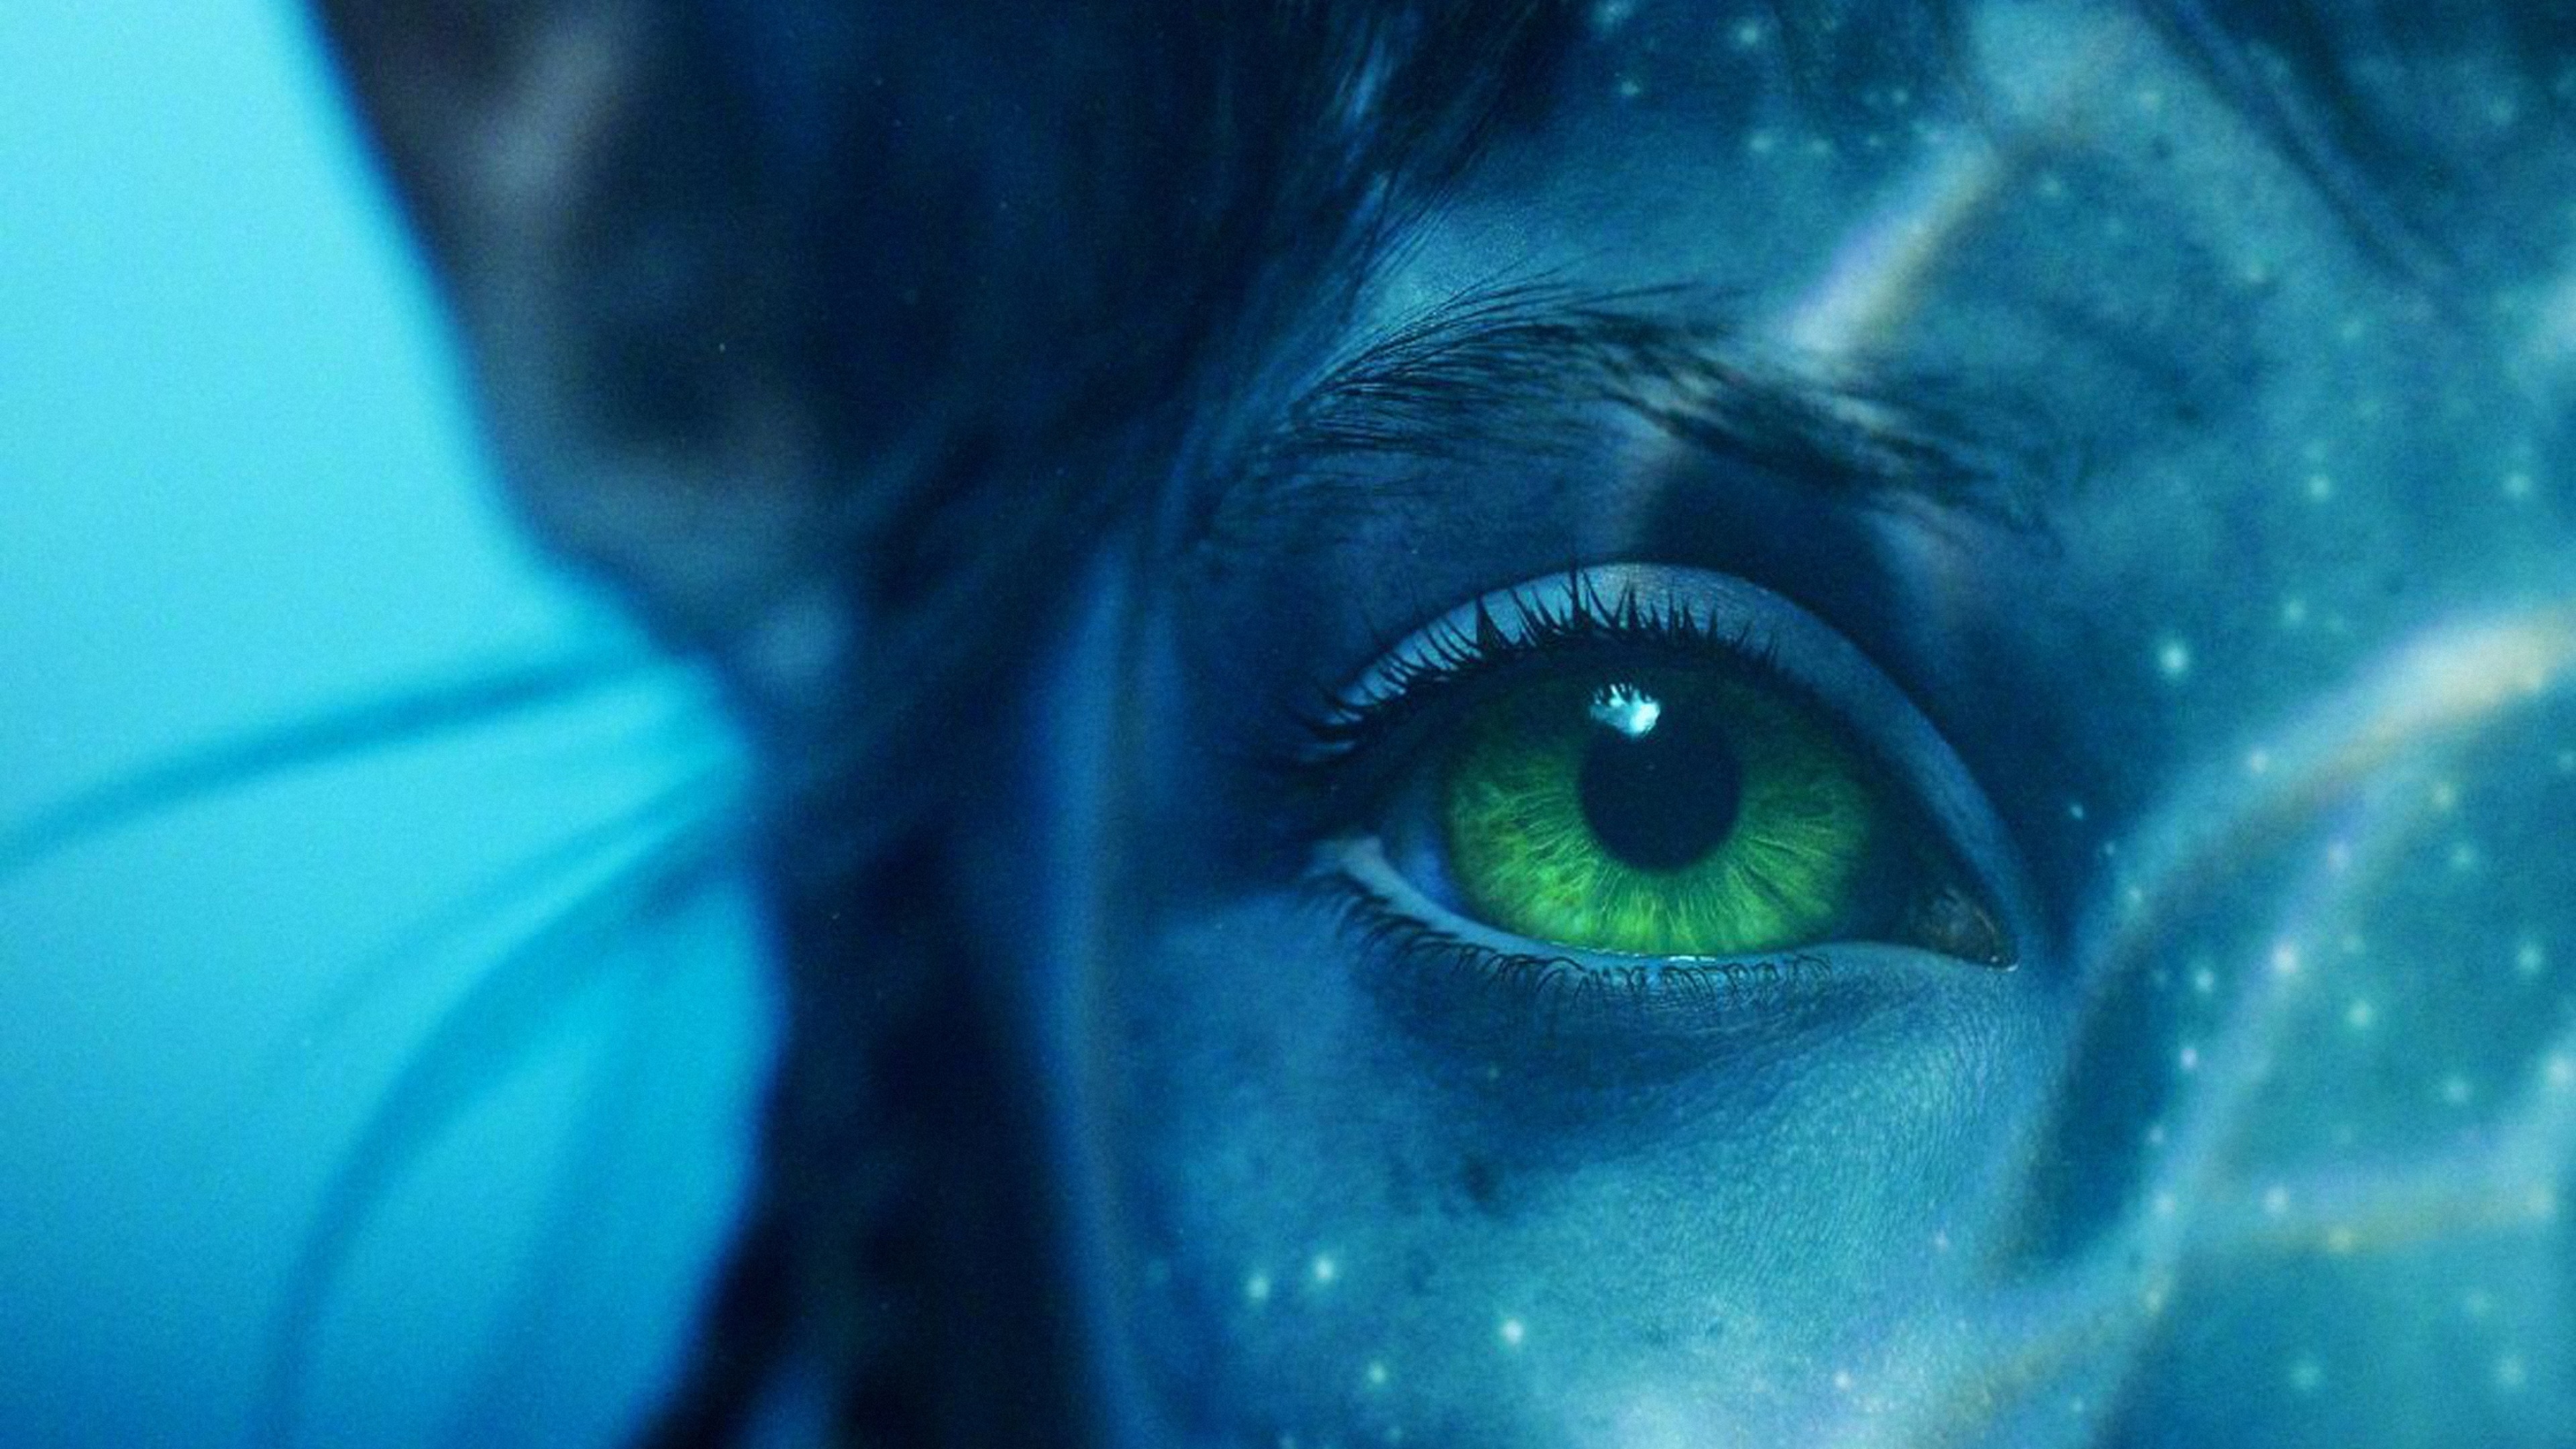 Avatar: The Way of Water Wallpaper 4K, Neytiri, 2022 Movies, Movies